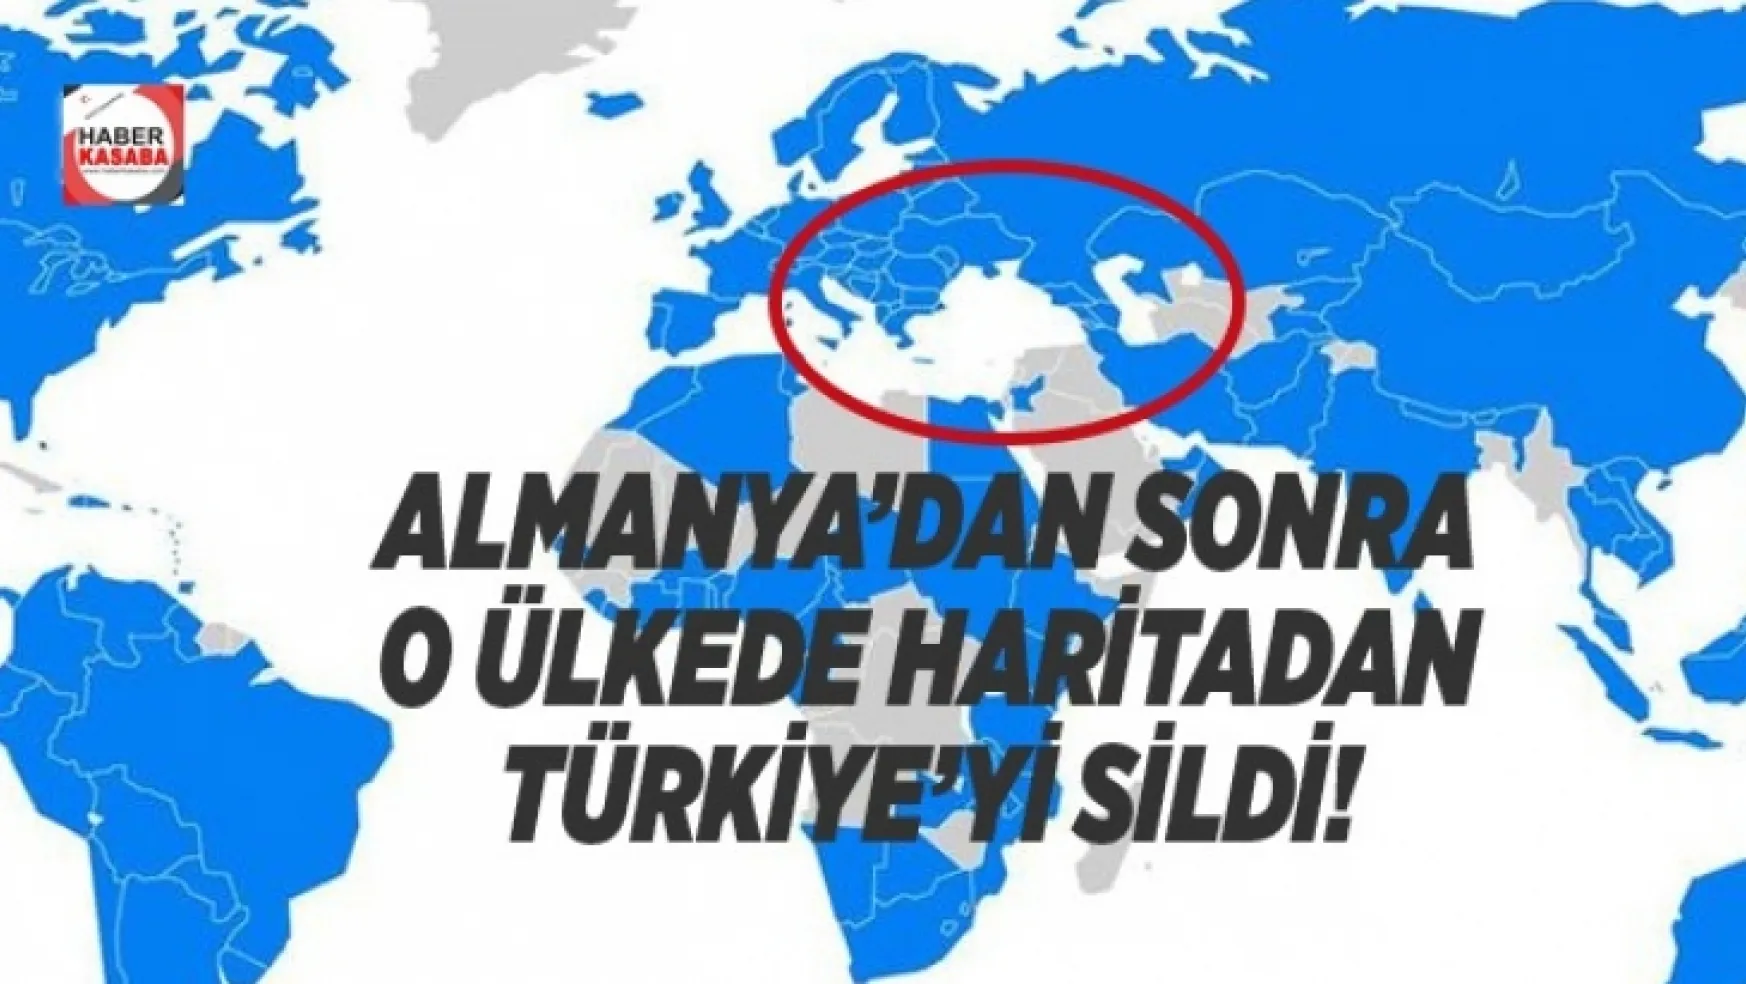 O ülkede Almanya'dan sonra haritadan Türkiye'yi sildi!